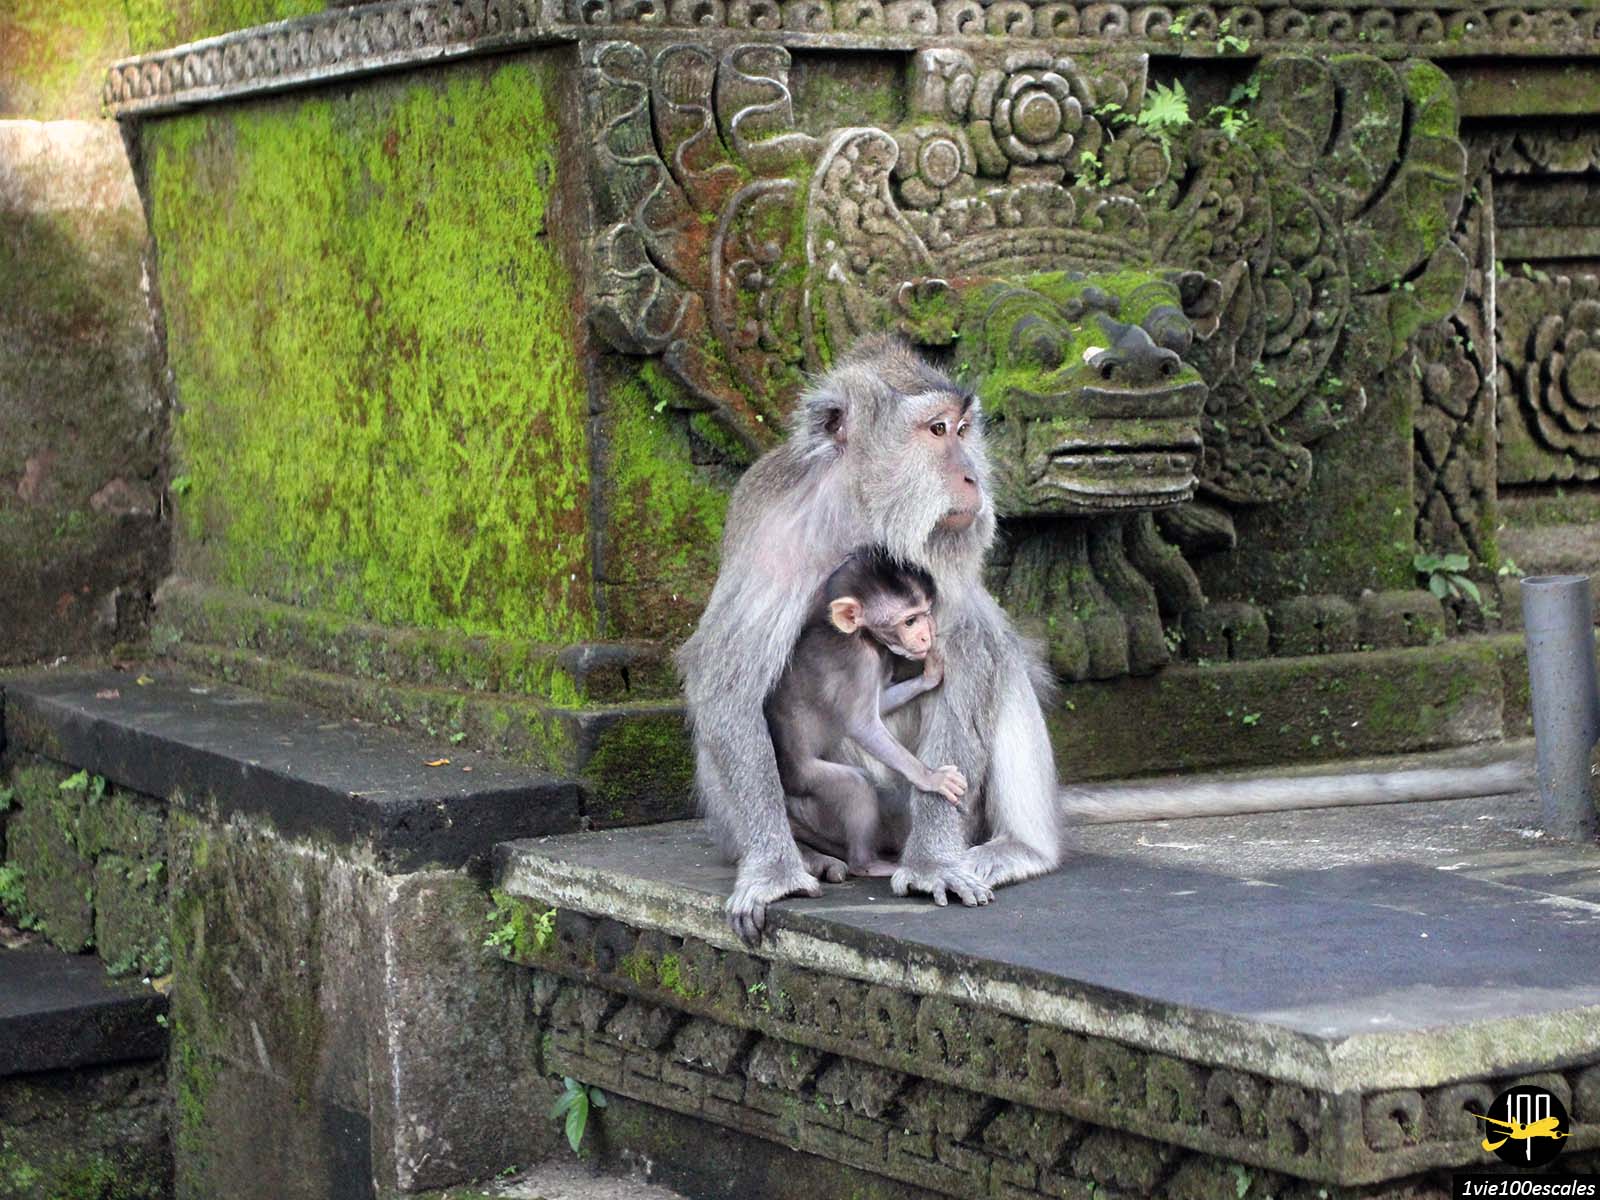 La Monkey Forest d'Ubud est une réserve naturelle située à Ubud (Bali). Elle abrite plus de 600 macaques crabiers